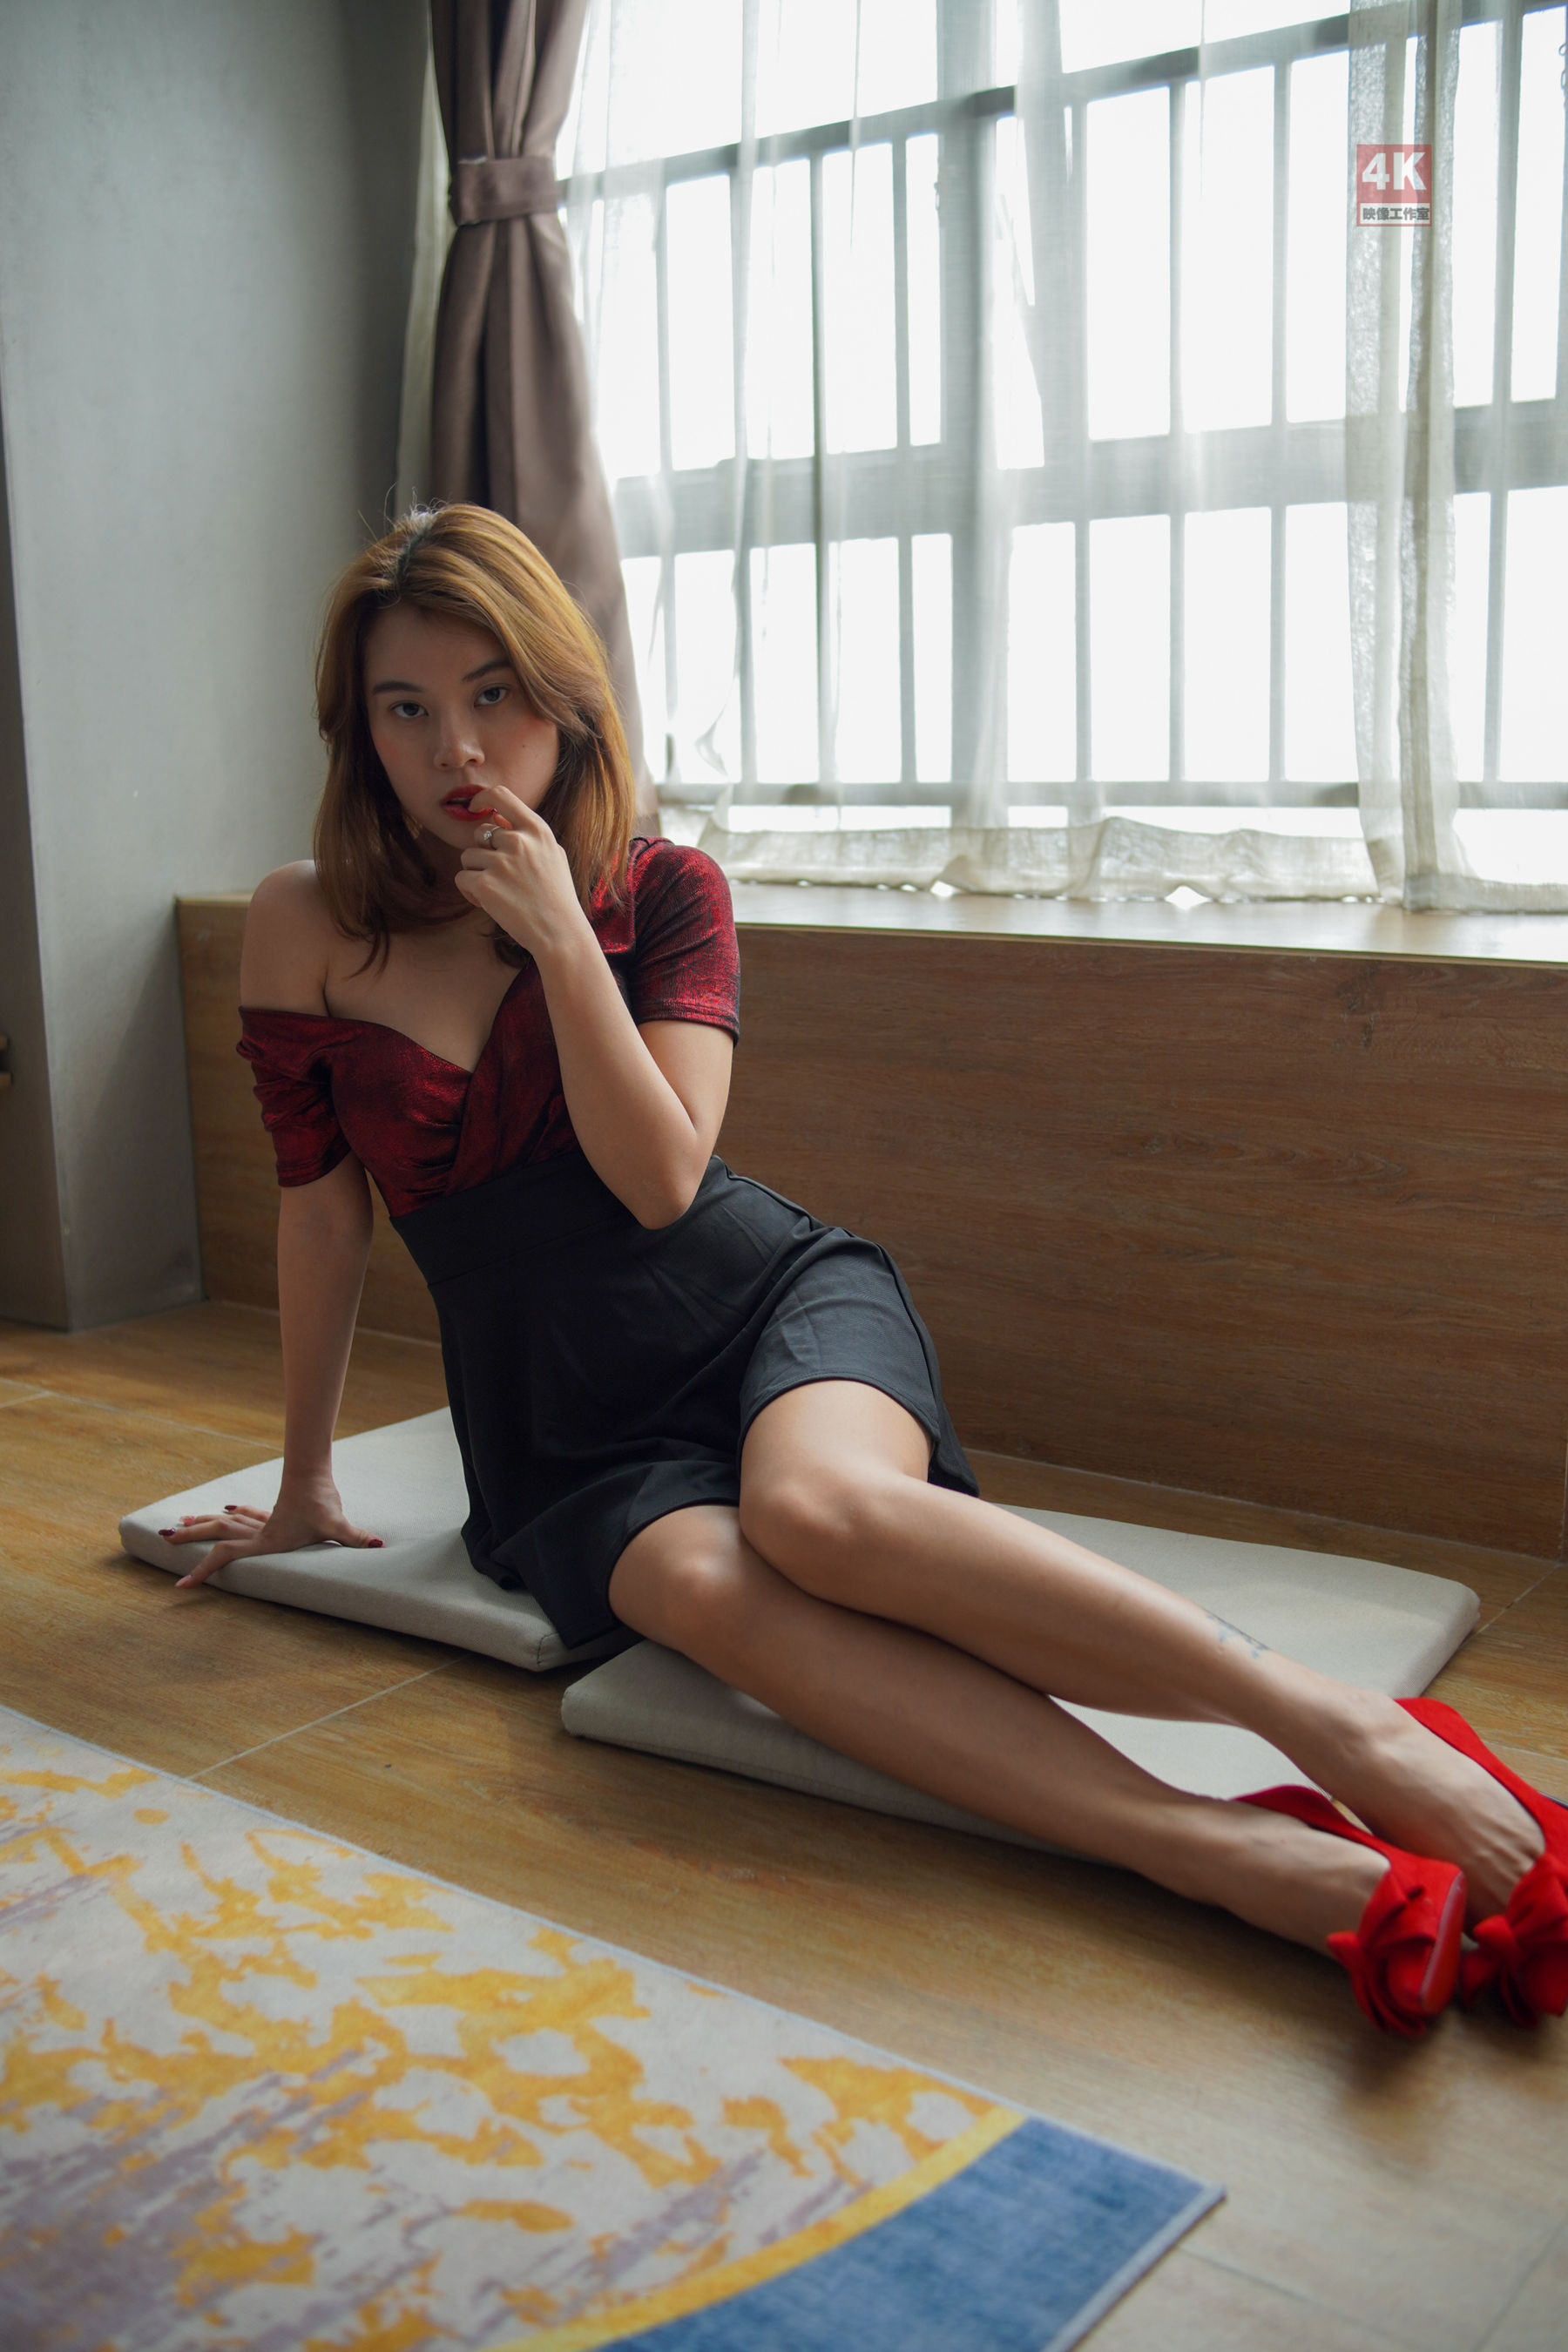 [柜 liGUI] Kiki “window people” stockings mature women’s photo